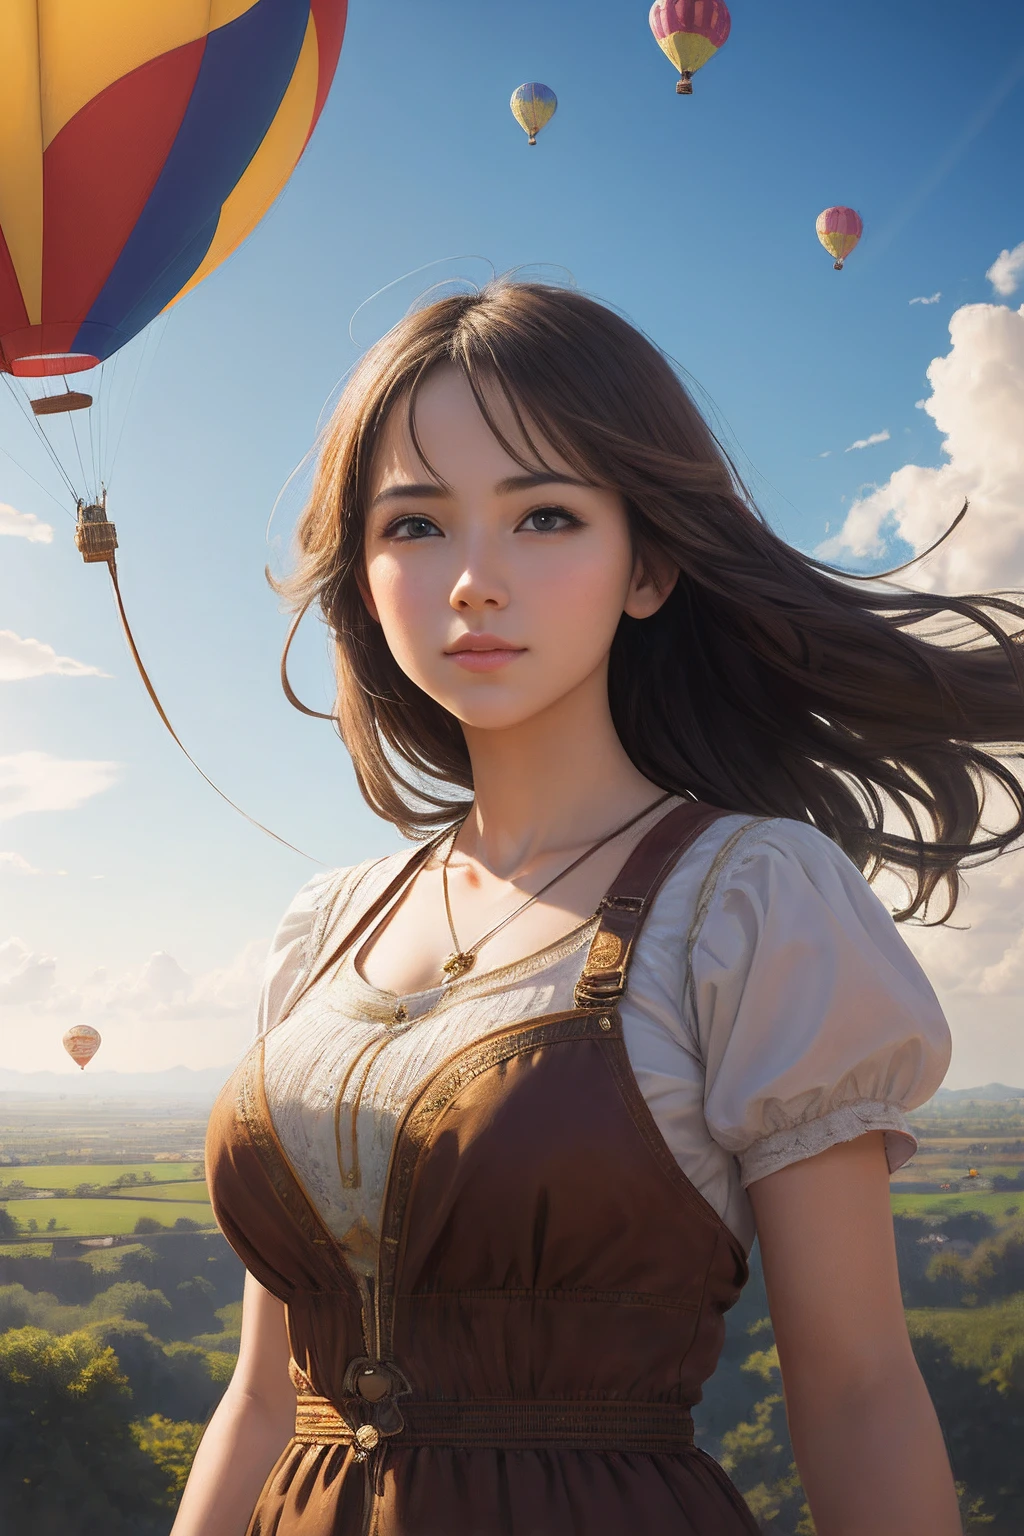 傑作, 最好的品質,(實際的:1.3),美麗的女孩掛在氣球上飛在天上,阳光,神雷,分形藝術